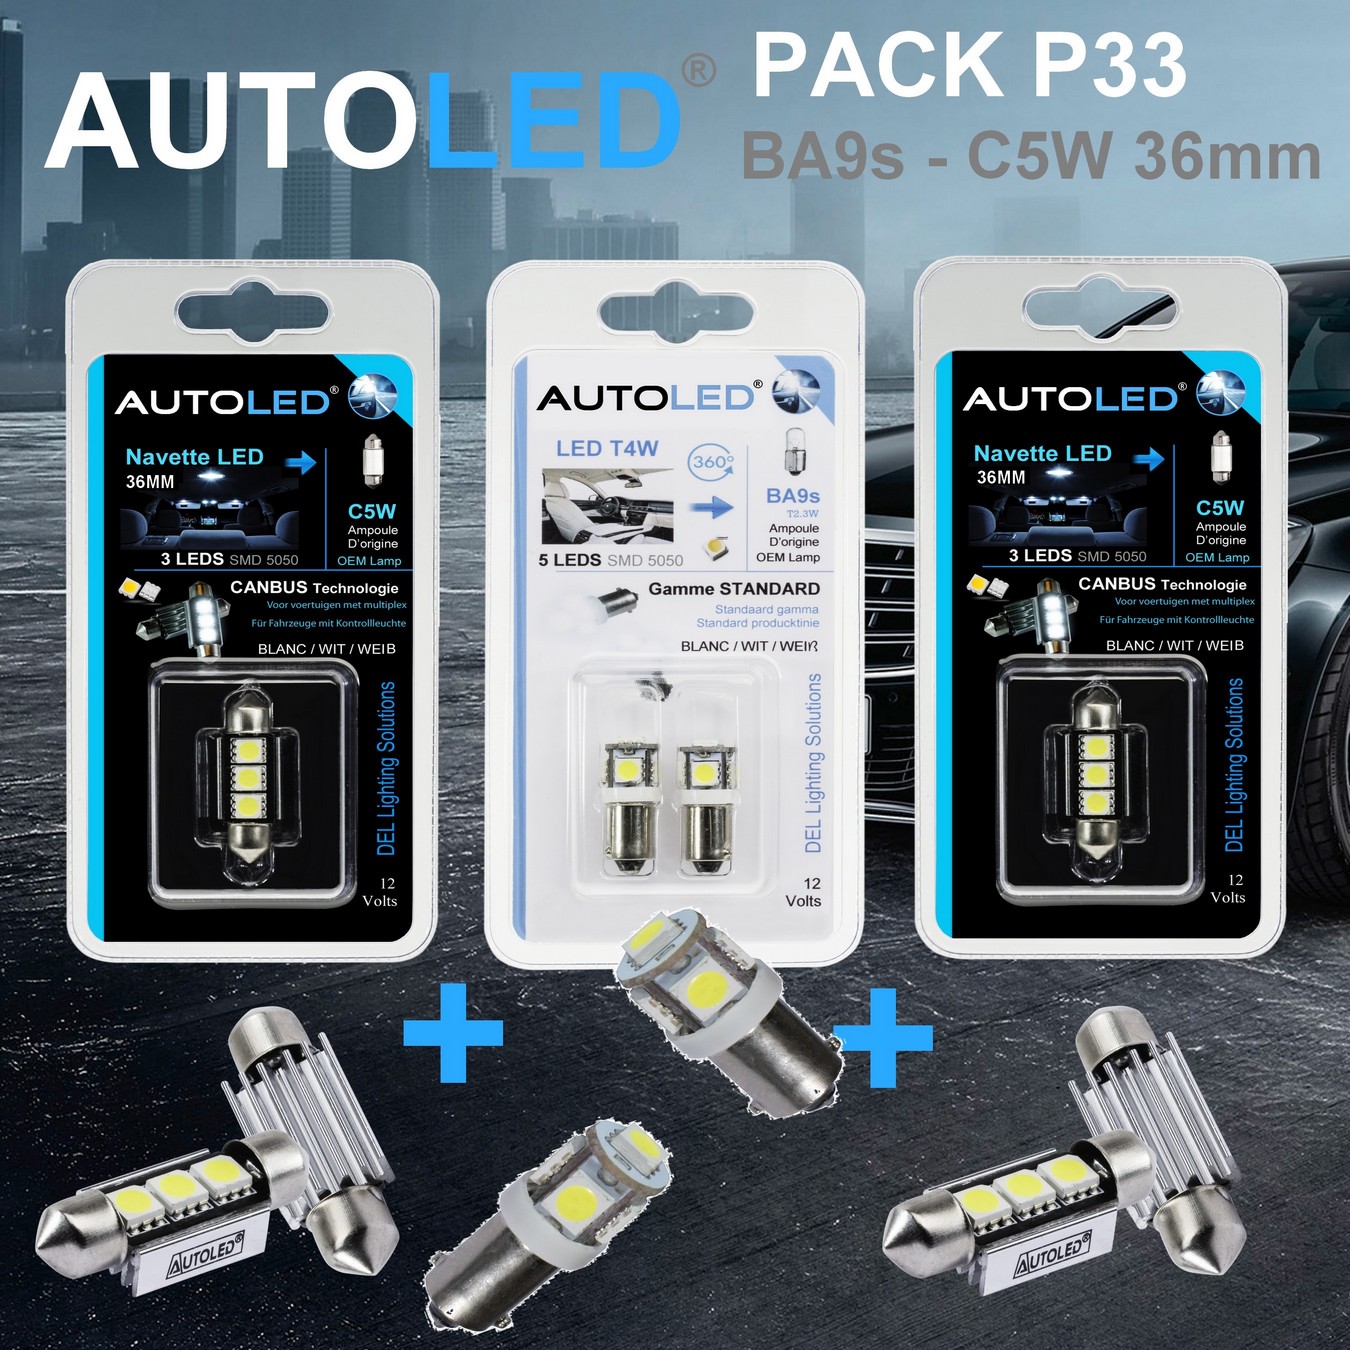 Pack-4-ampoules-led-blanc-habitacle-plaque-plafonnier-boite -a gants-coffre-ba9s-t4w-5leds-smd-5050-canbus-navette-36mm-c5w-c10w-3leds-blanc-eclairage-led-autoled-pack-p33.2